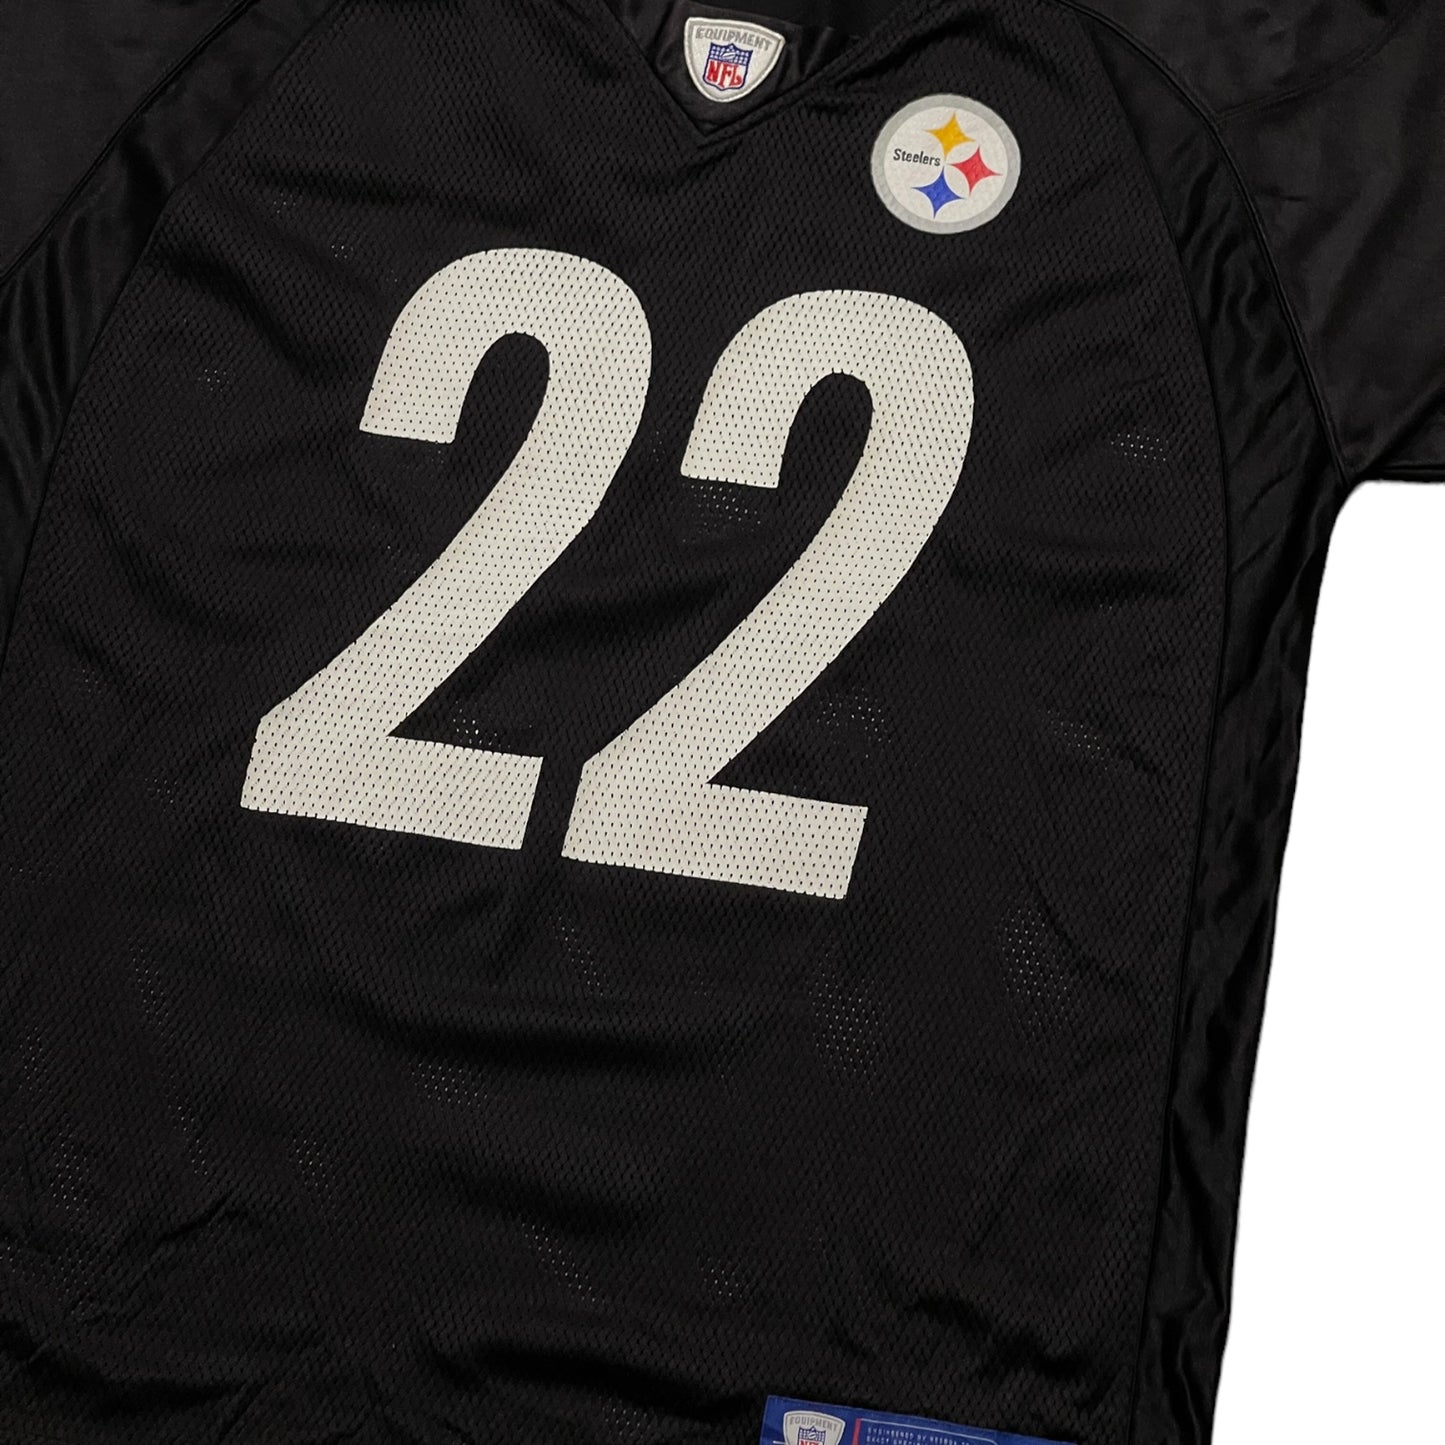 Reebok Steelers "Staley" 22 NFL Jersey